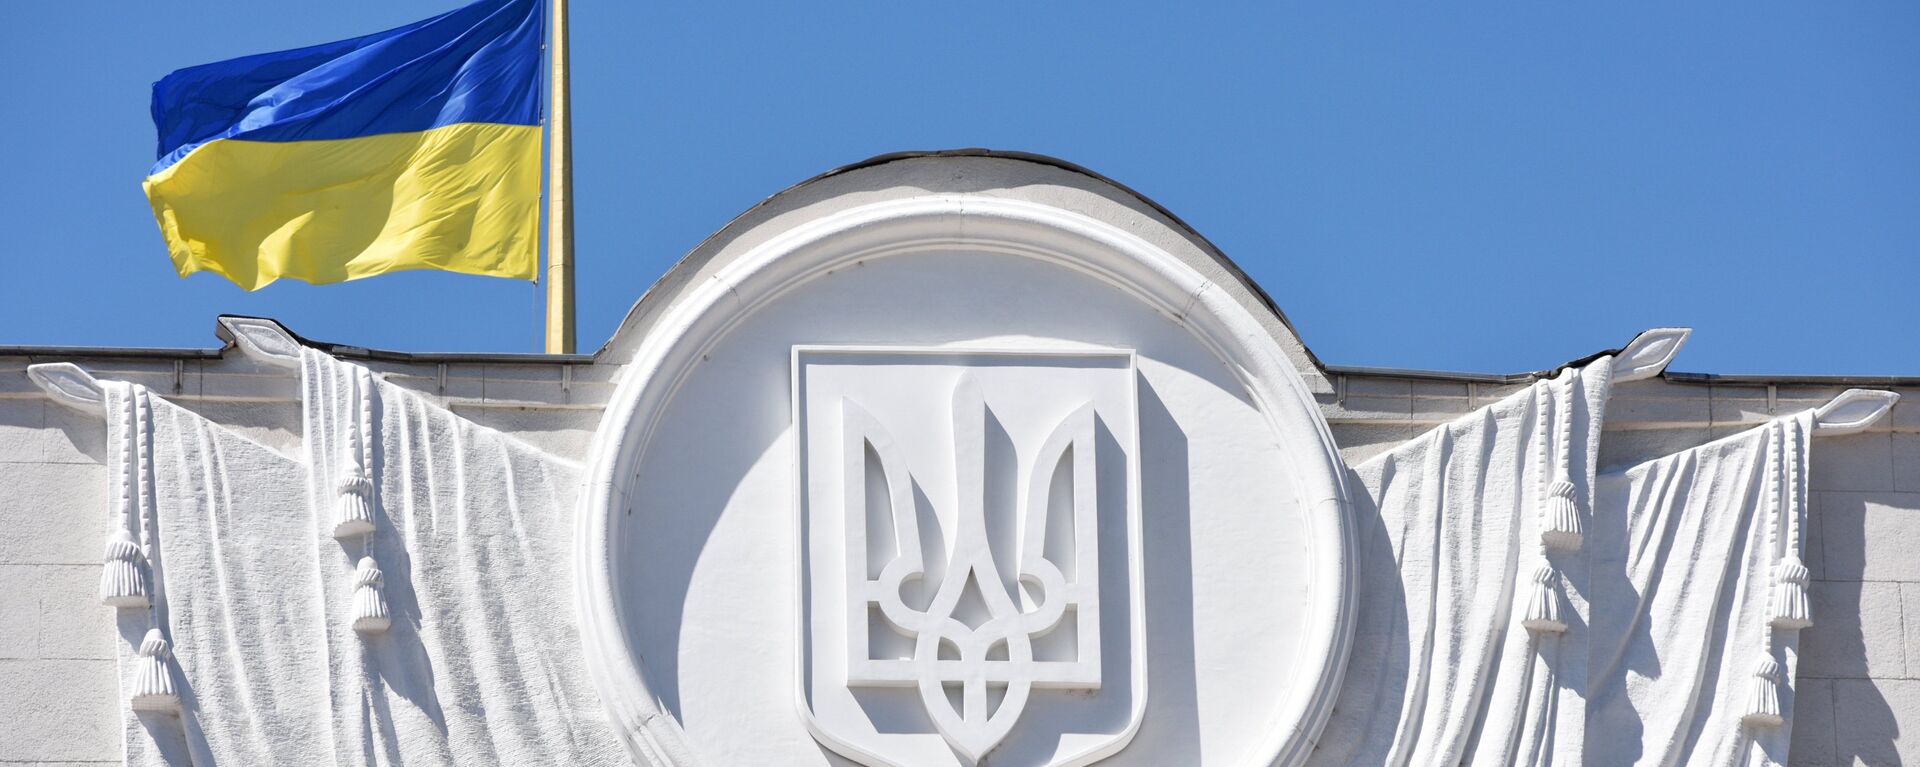 Флаг Украины на здании Верховной рады в Киеве - Sputnik Беларусь, 1920, 20.08.2021